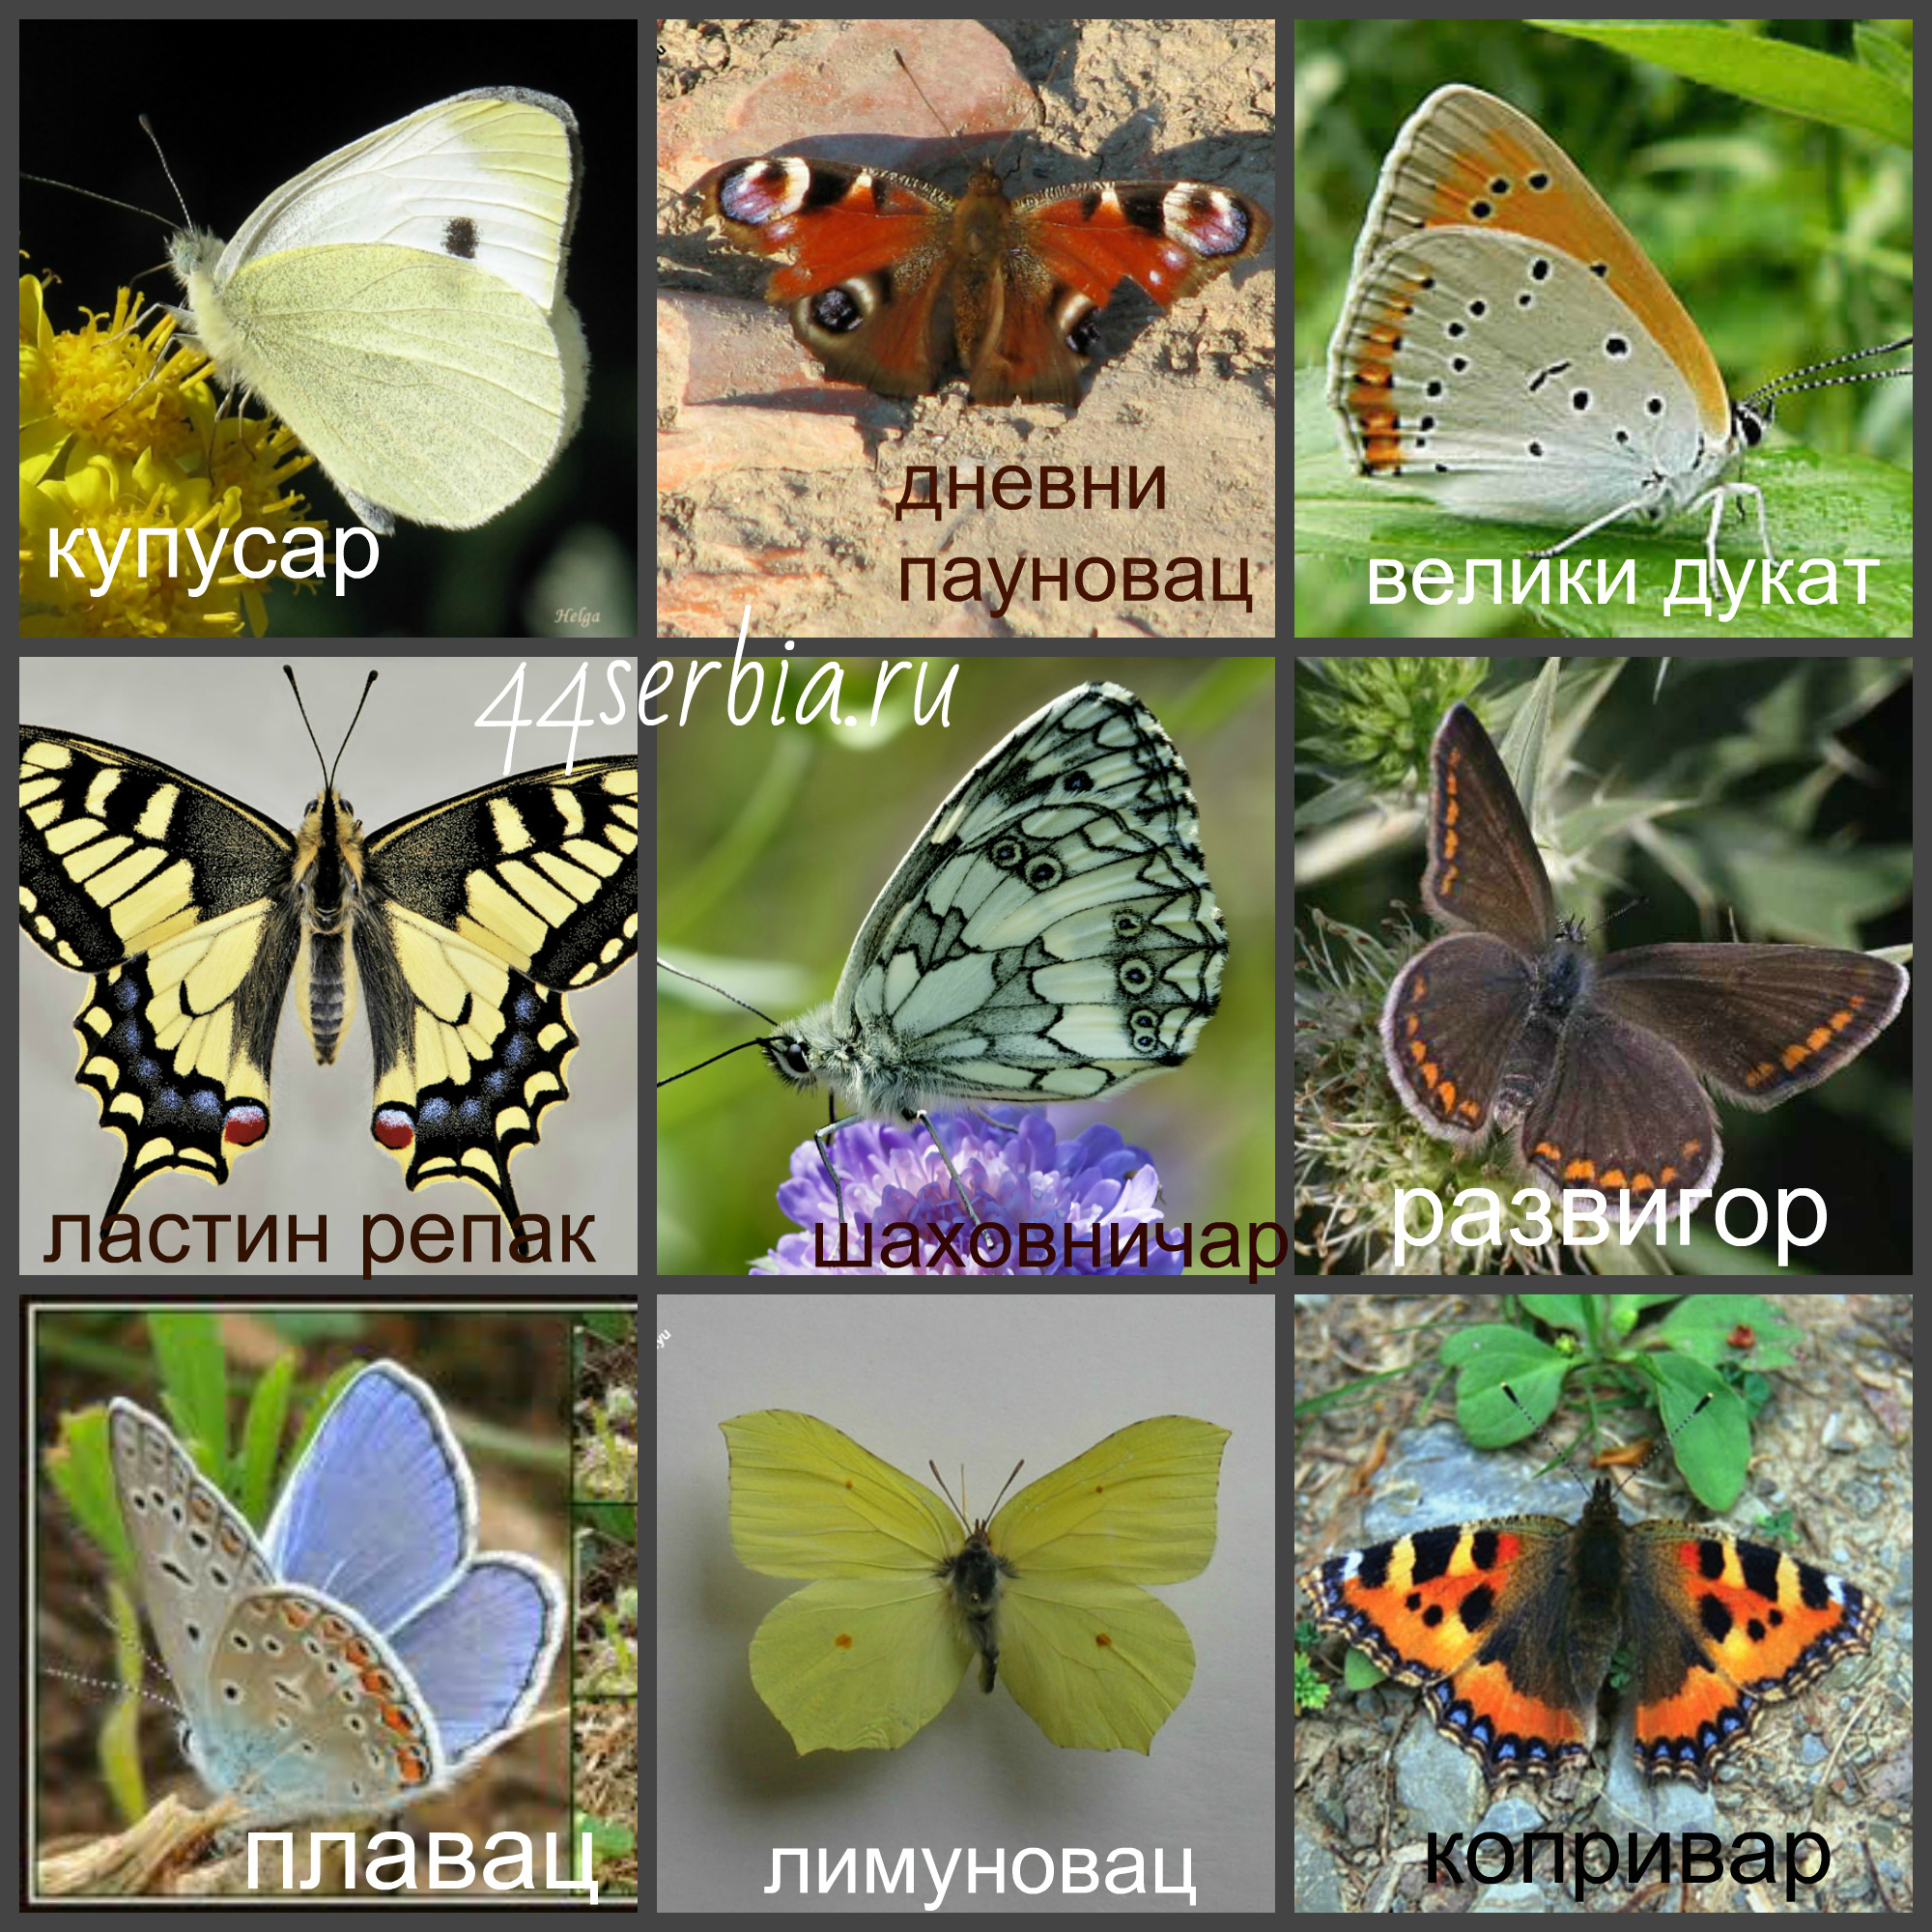 Какие имена бабочек. Виды бабочек. Название разных бабочек. Виды бабочек с названиями. Расцветки бабочек.